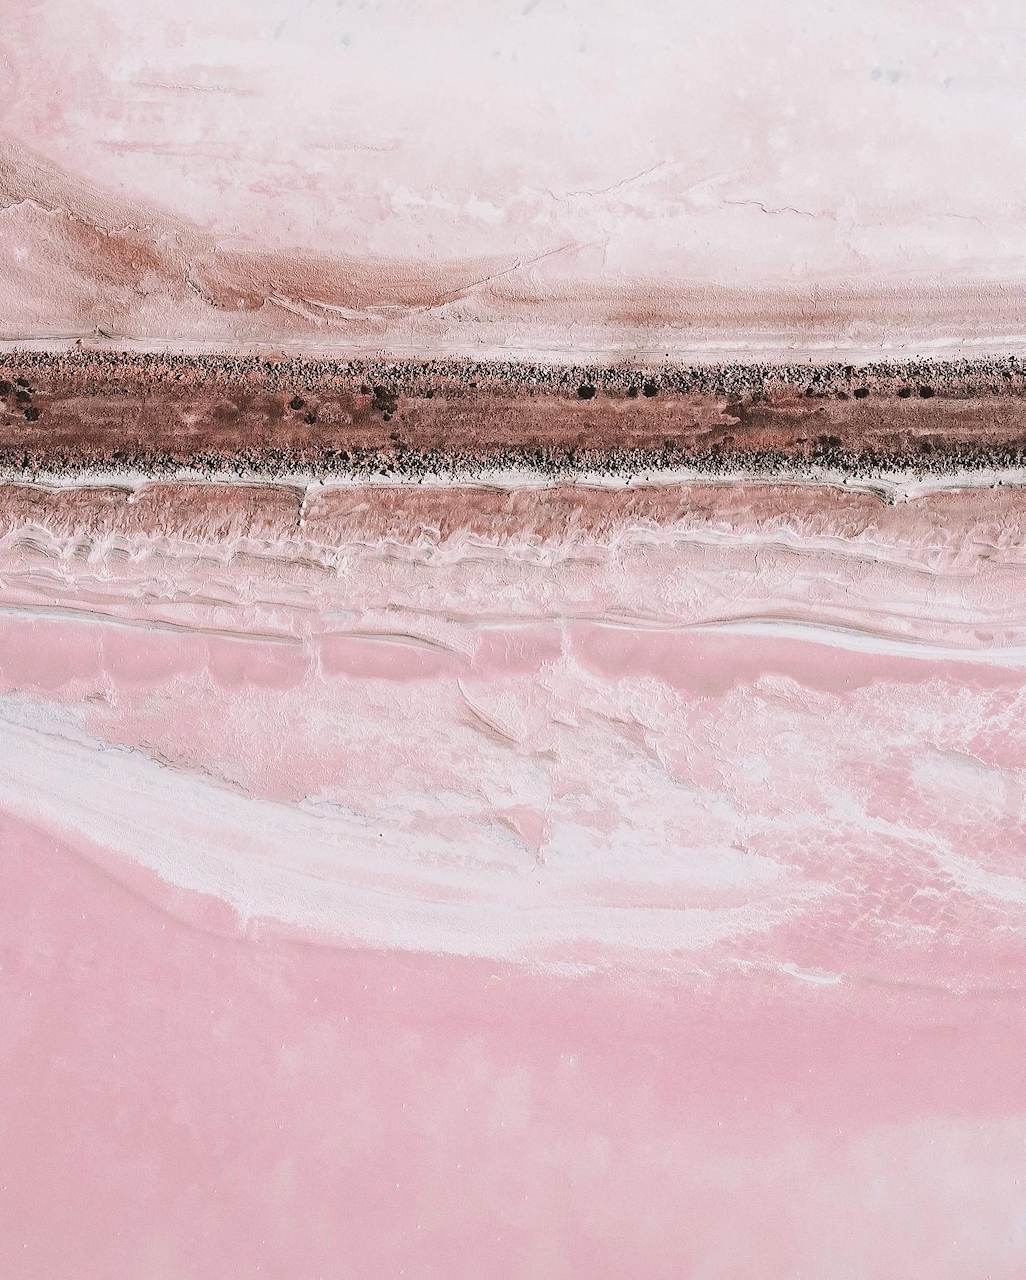 Le lac rose de Bumbunga vu par un drone - South Australia (SA) - Australie